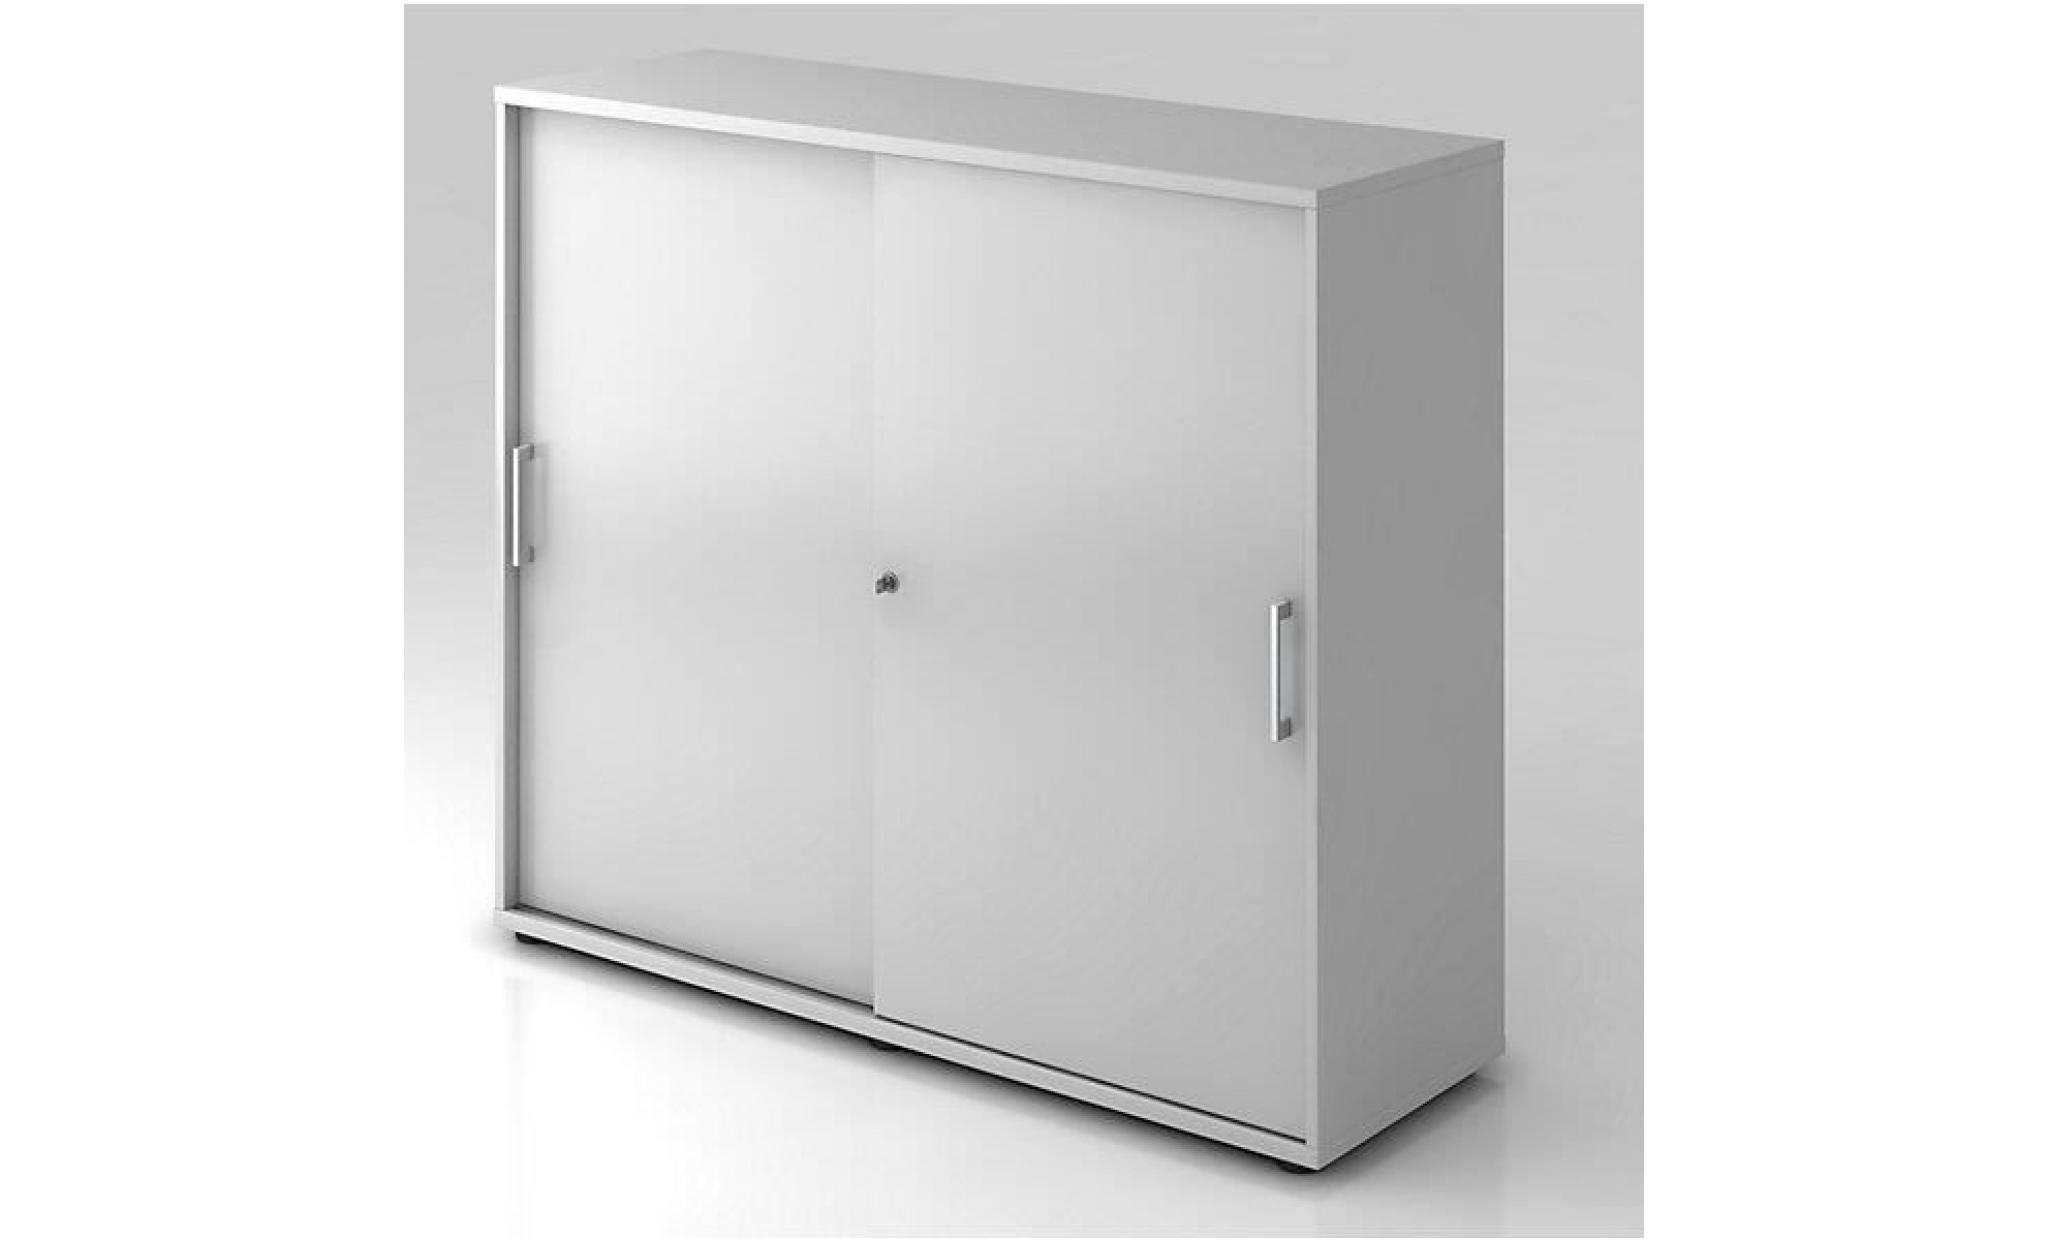 office akktiv armoire à portes coulissantes   hauteur 760 mm, 1 tablette   façon érable   armoire de bureau armoire à portes